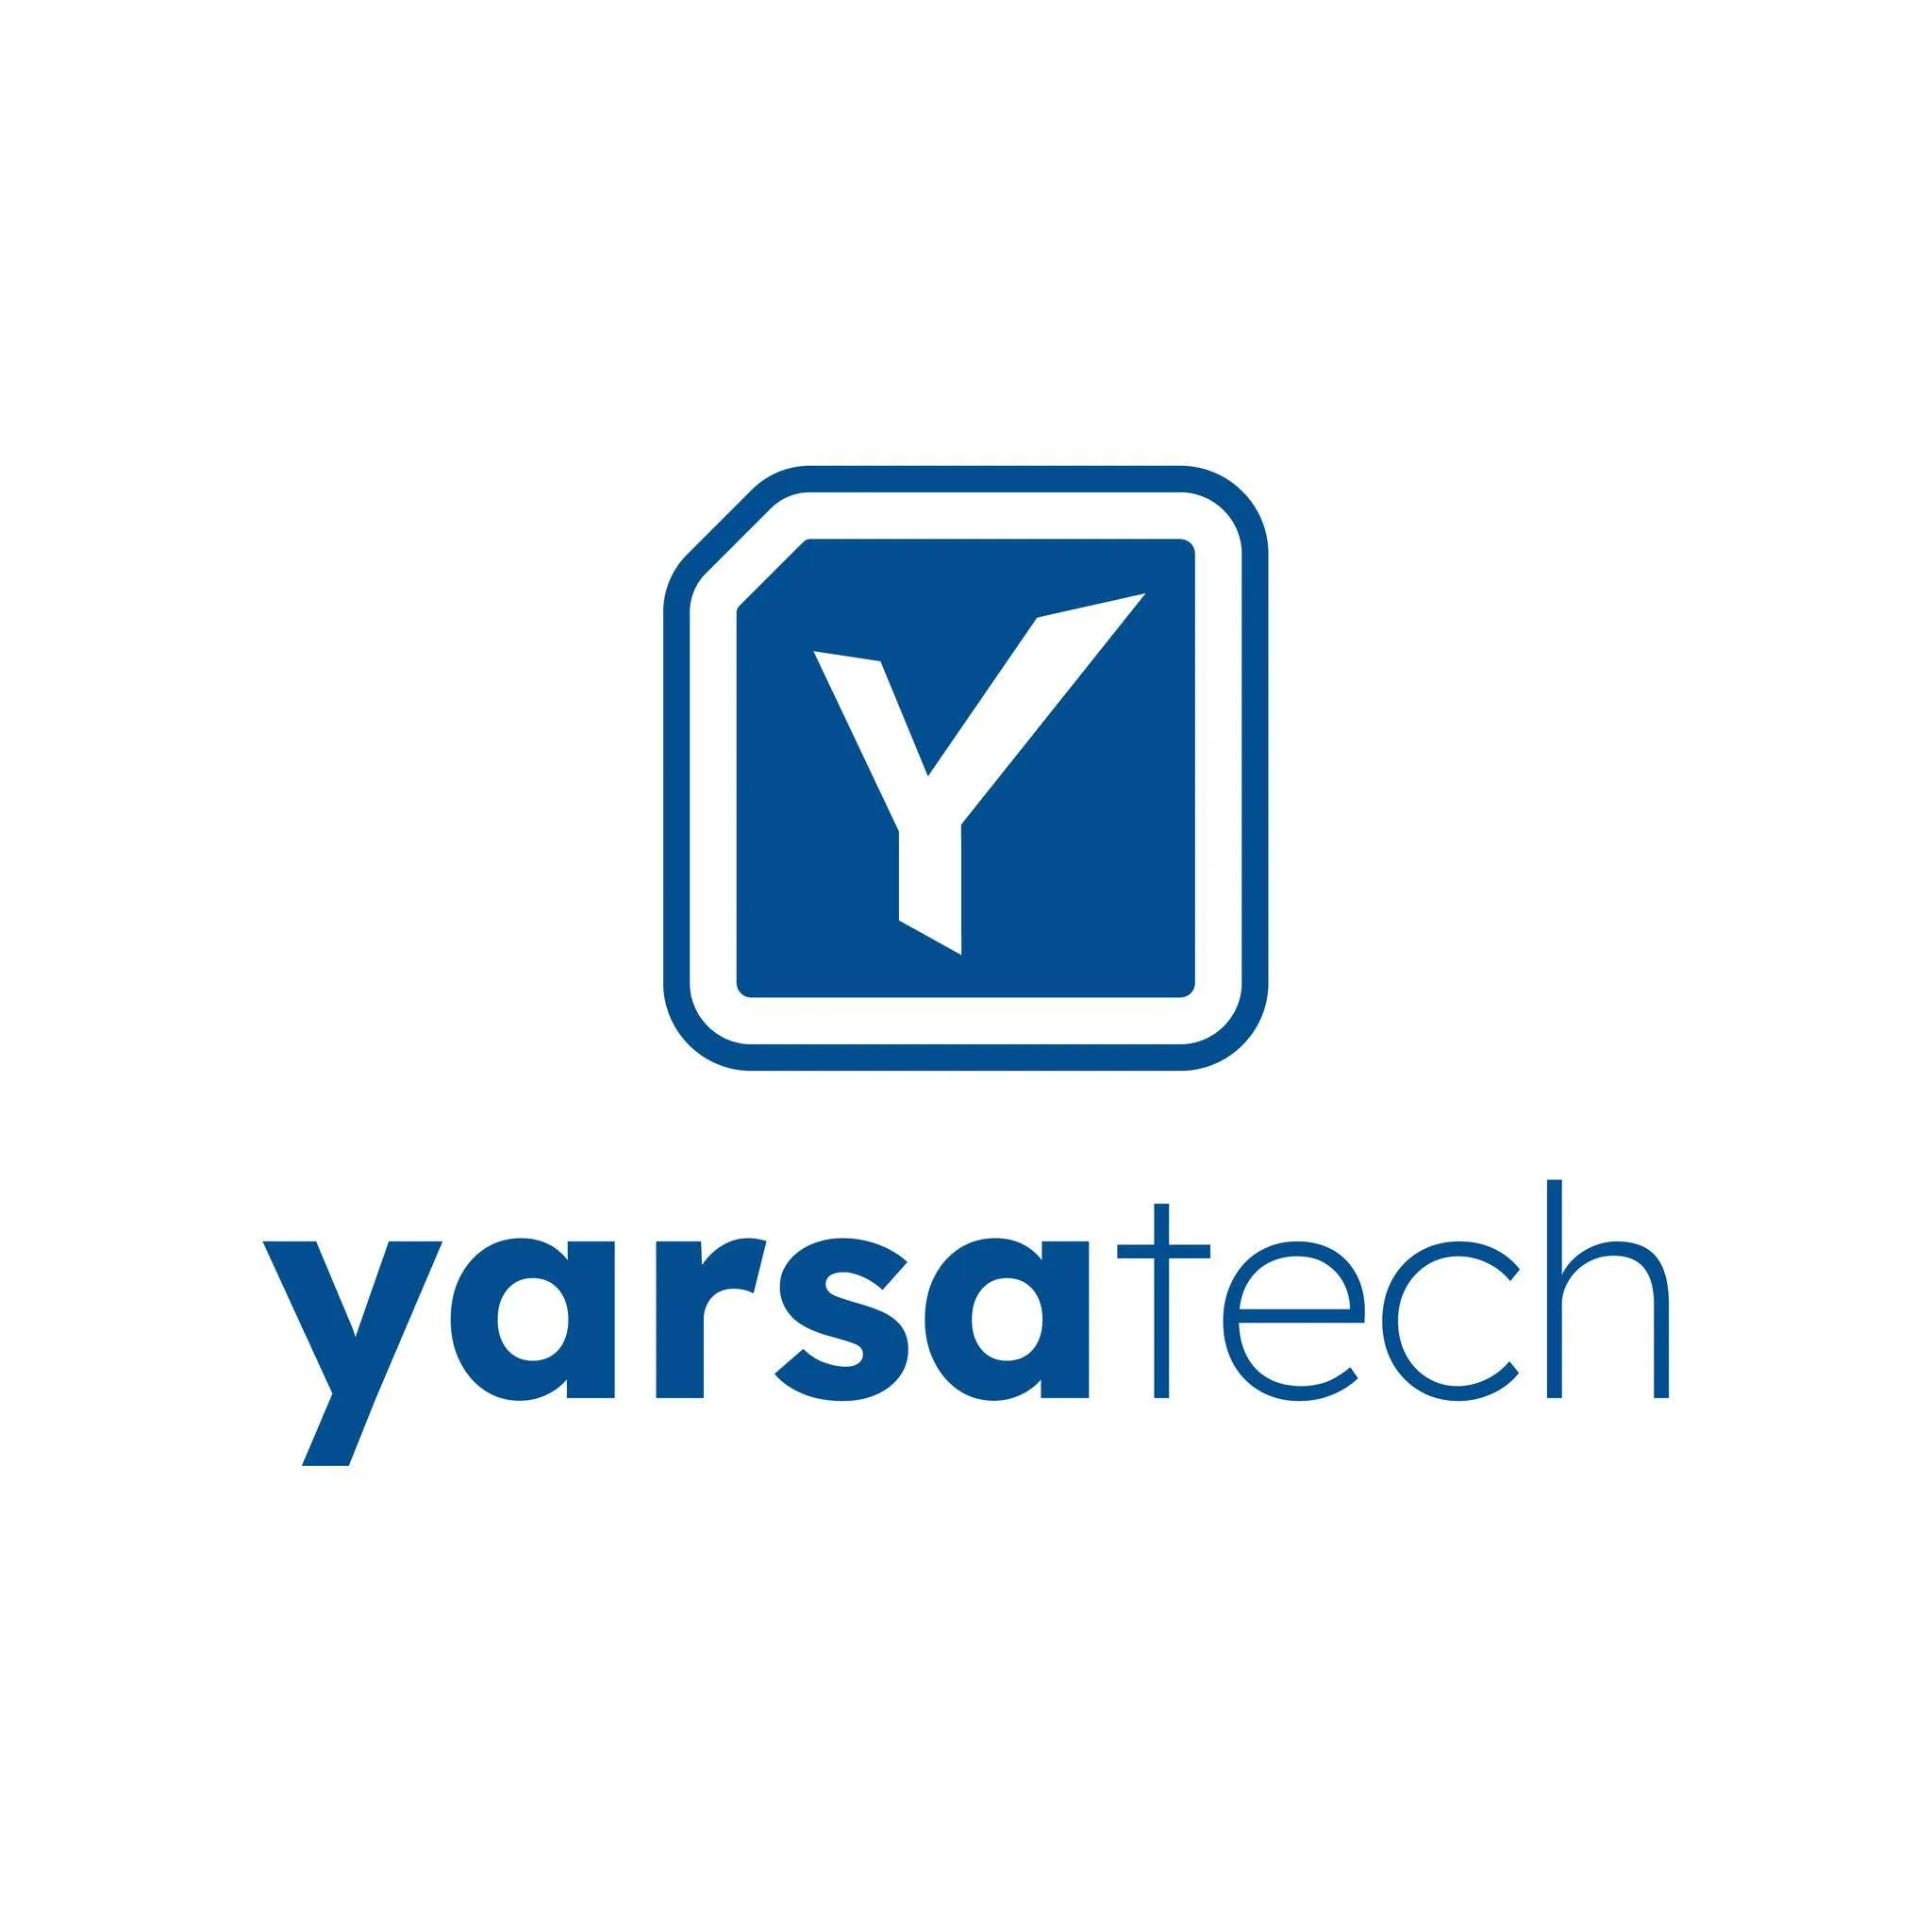 Yarsa Tech Pvt. Ltd